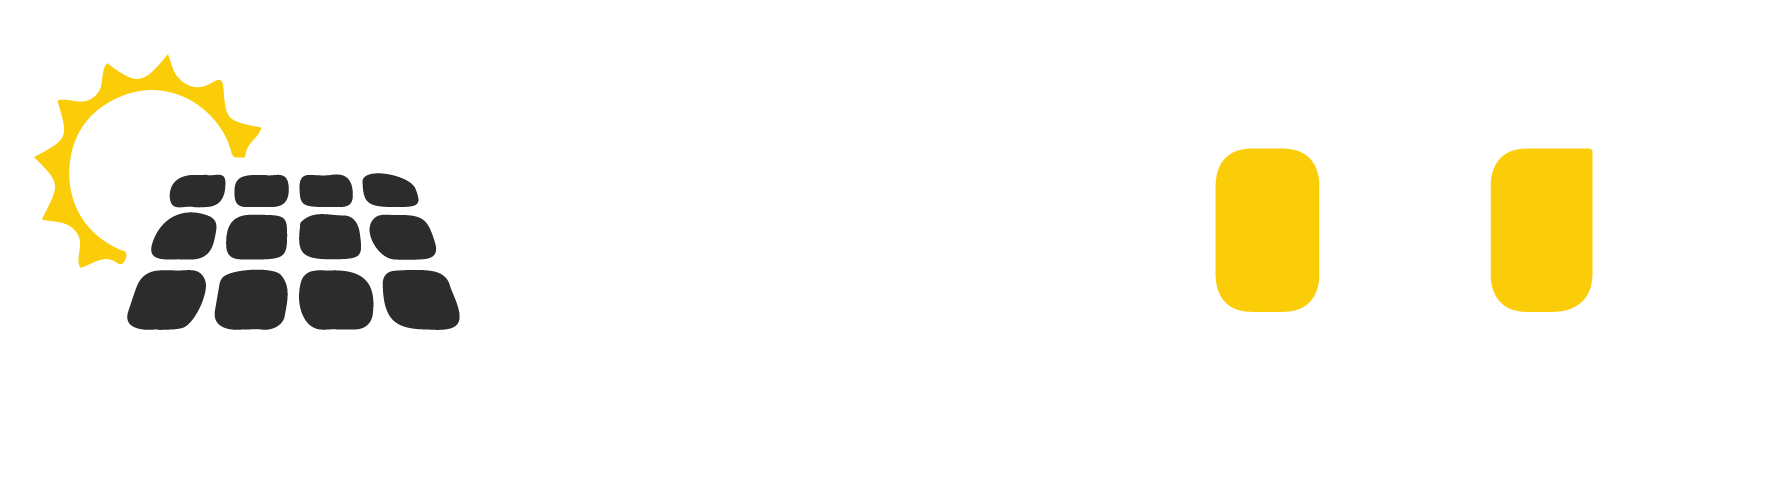 Gal Solar